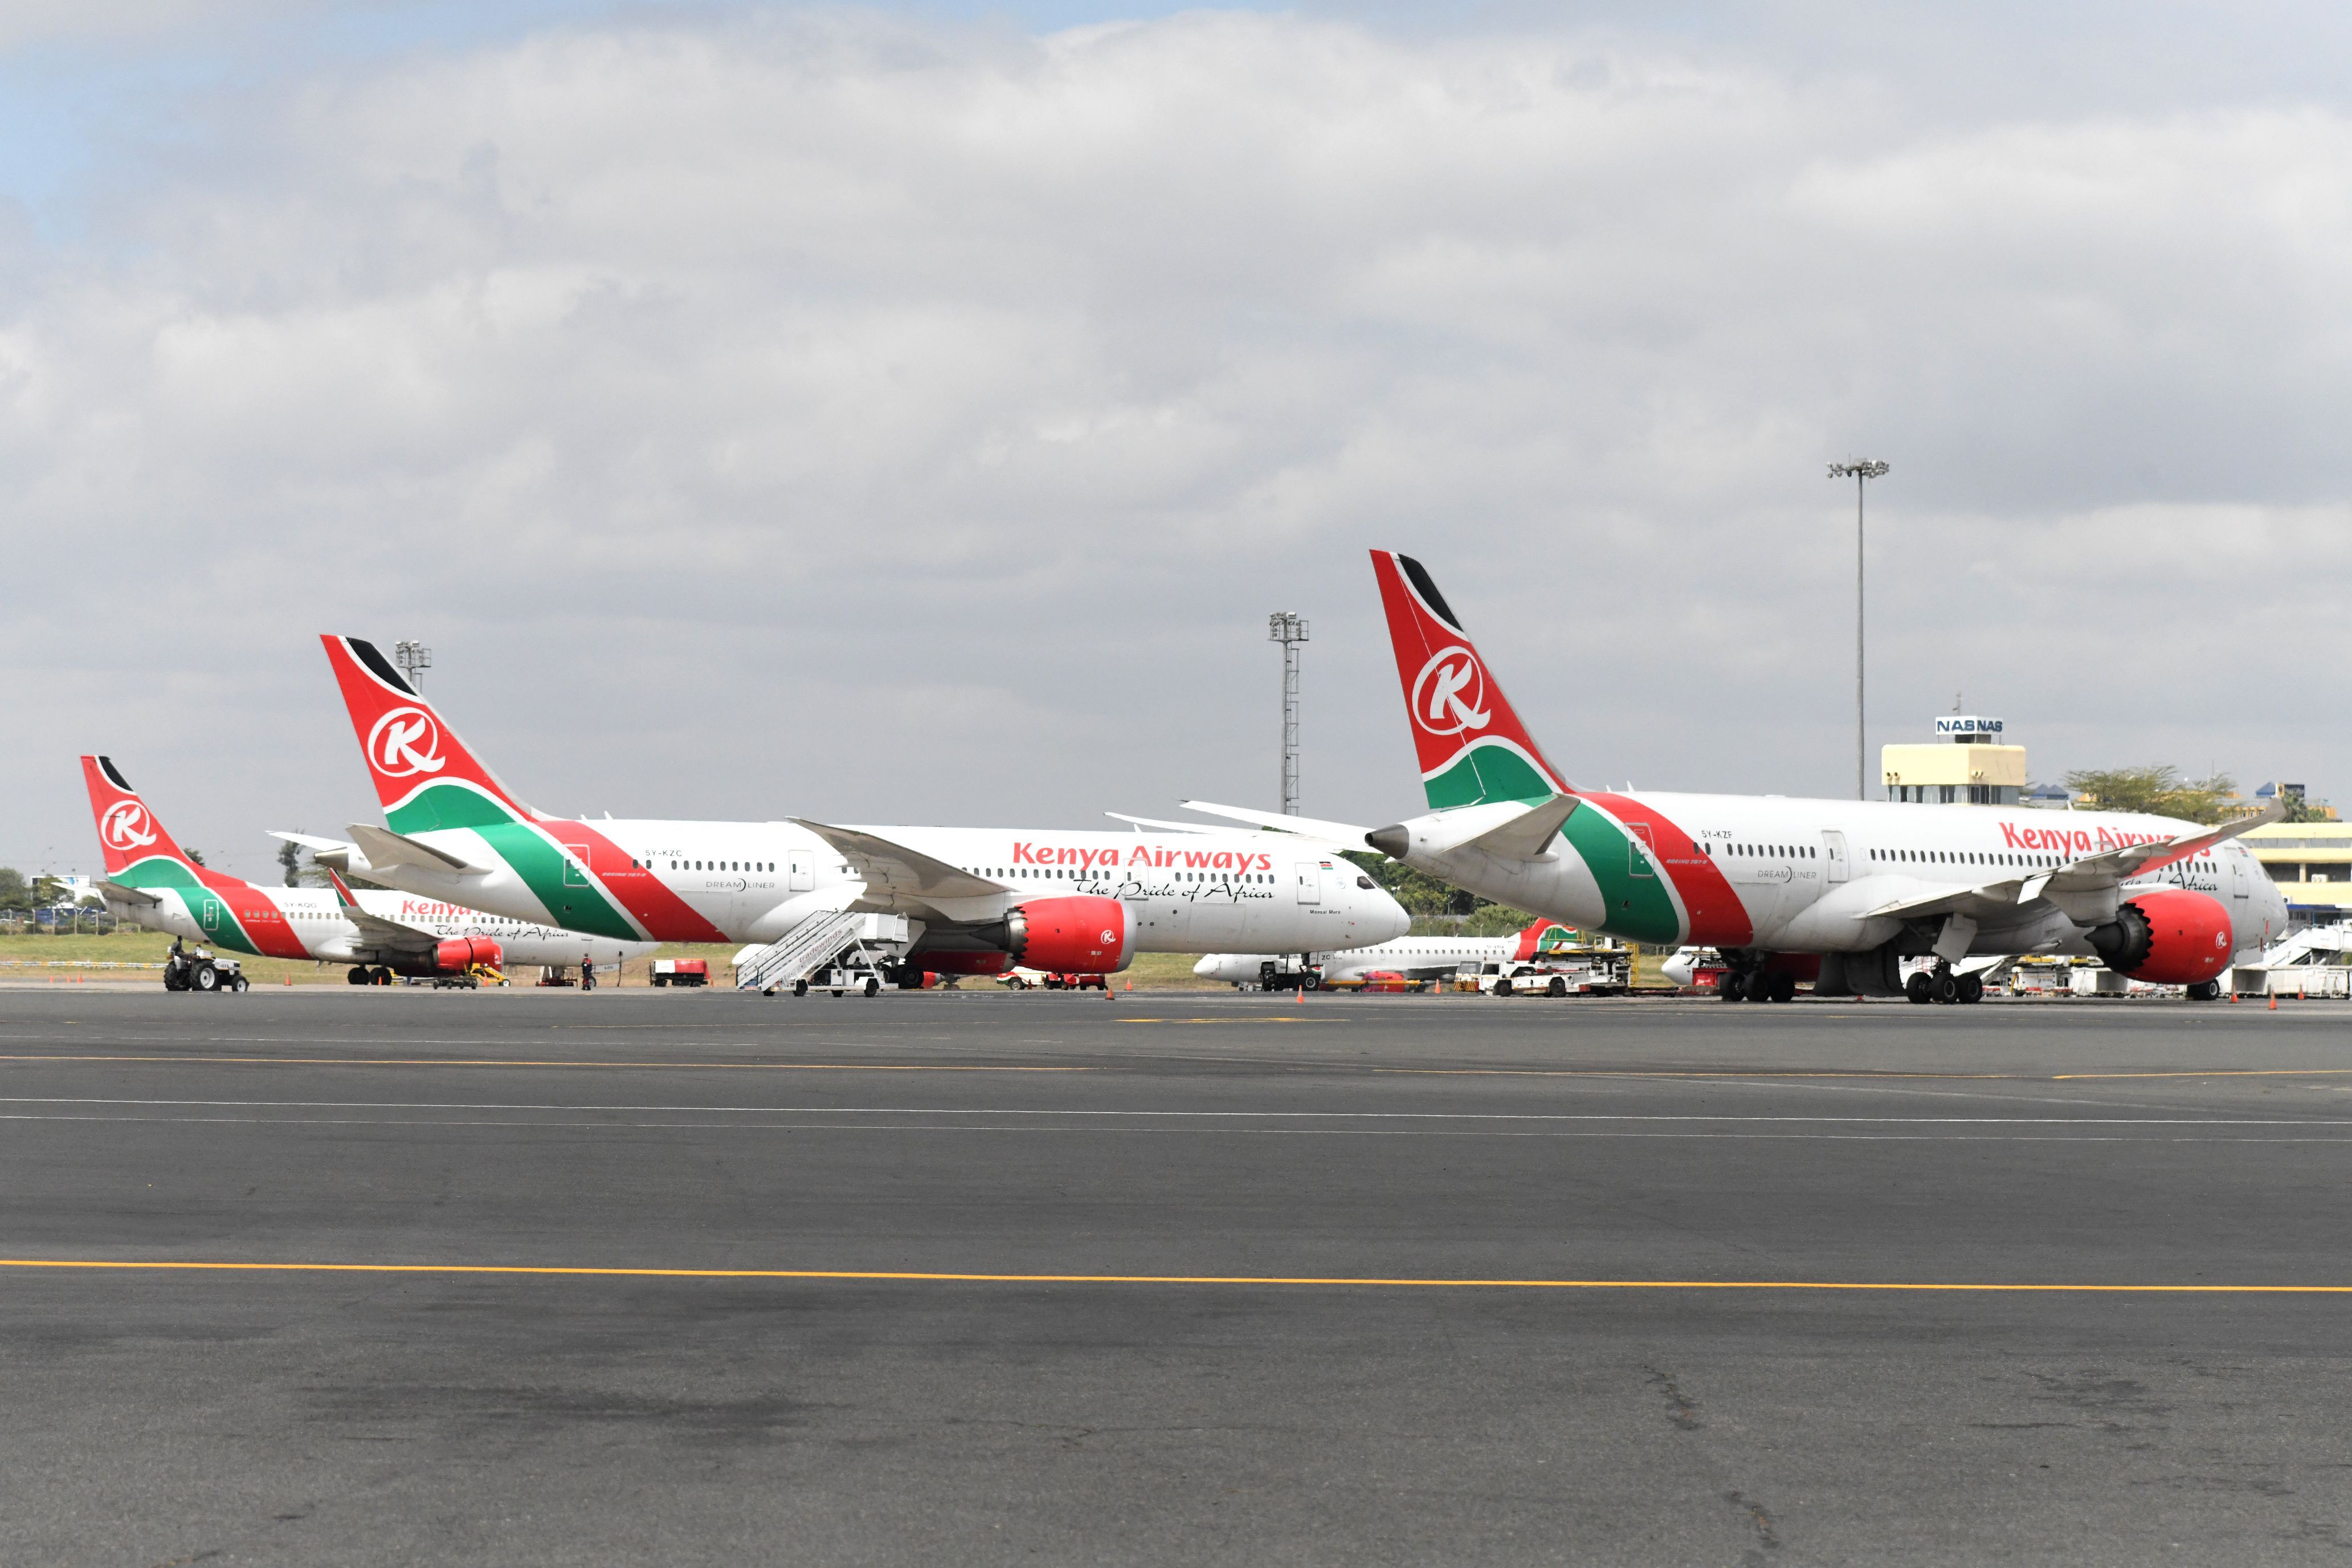 Kenya Airways Aircraft at airport